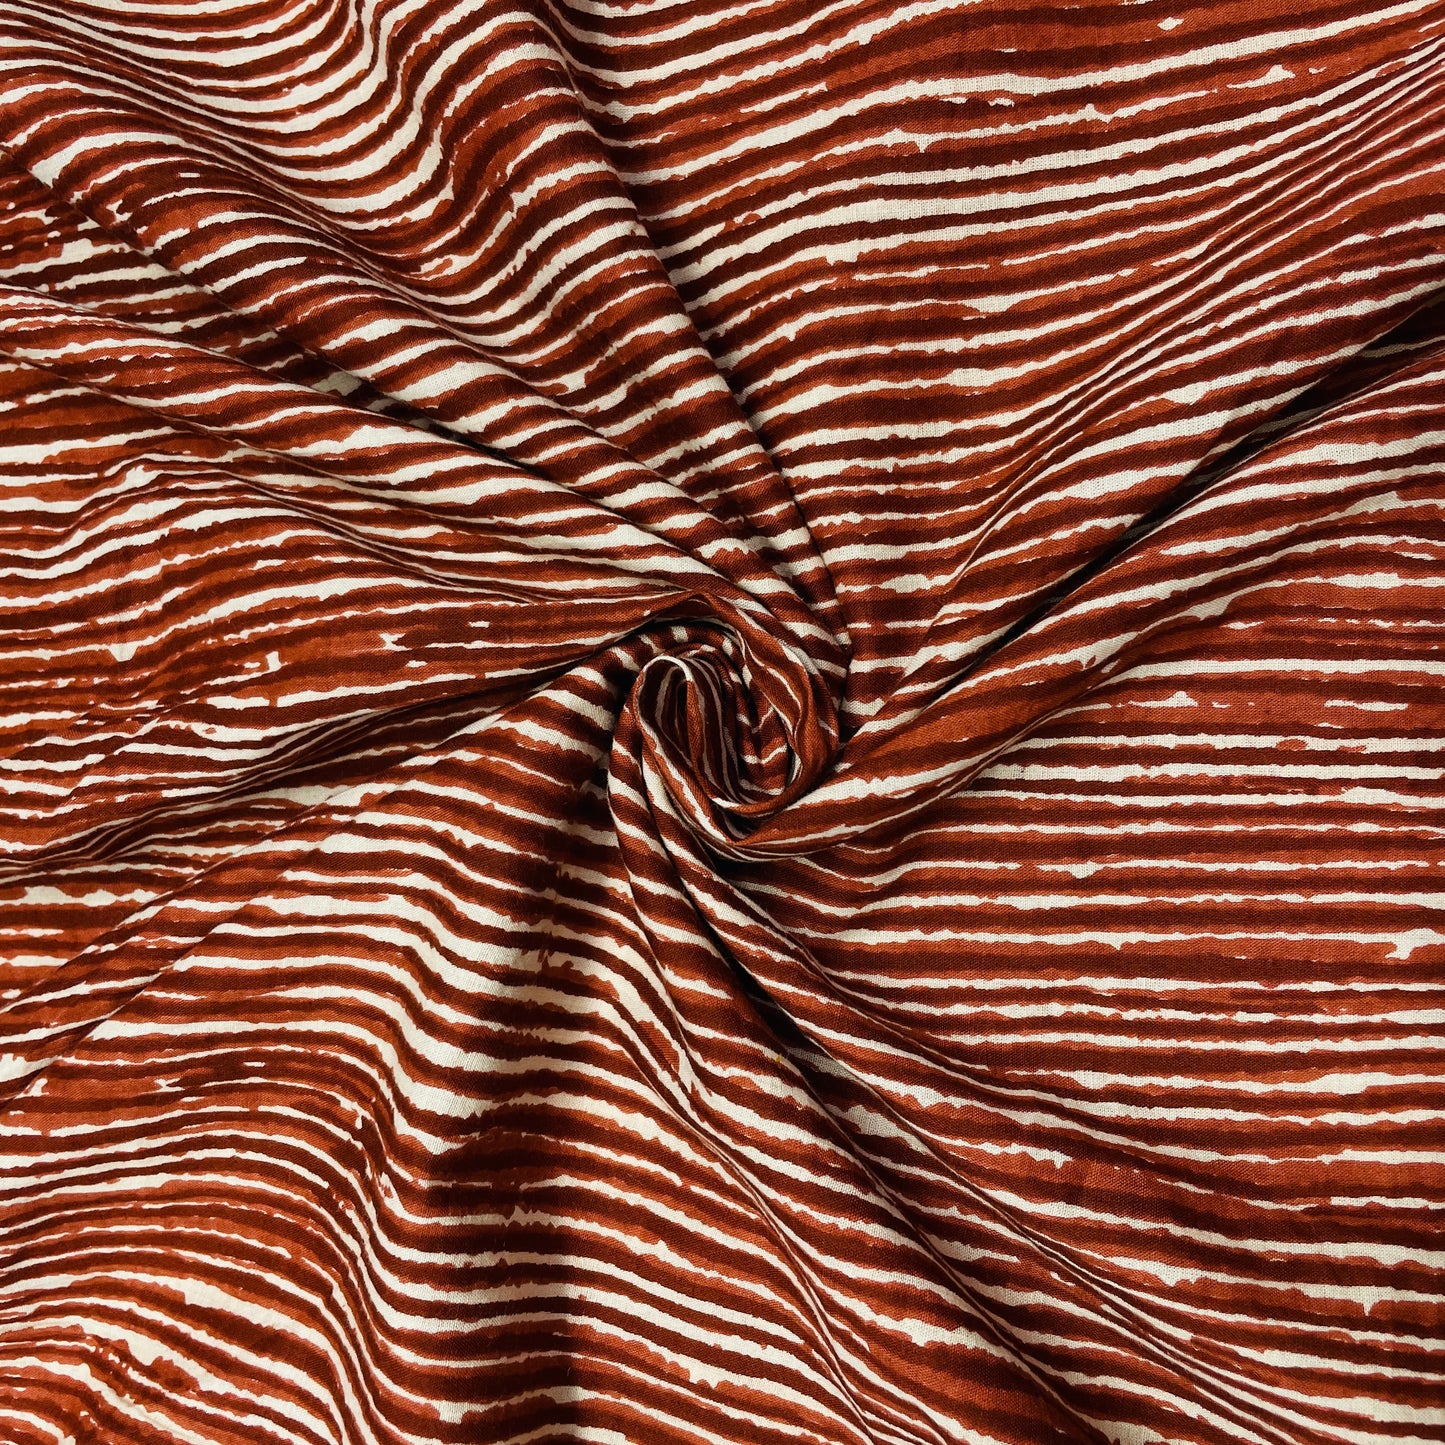 White & Red Stripes Print Cotton Fabric - TradeUNO